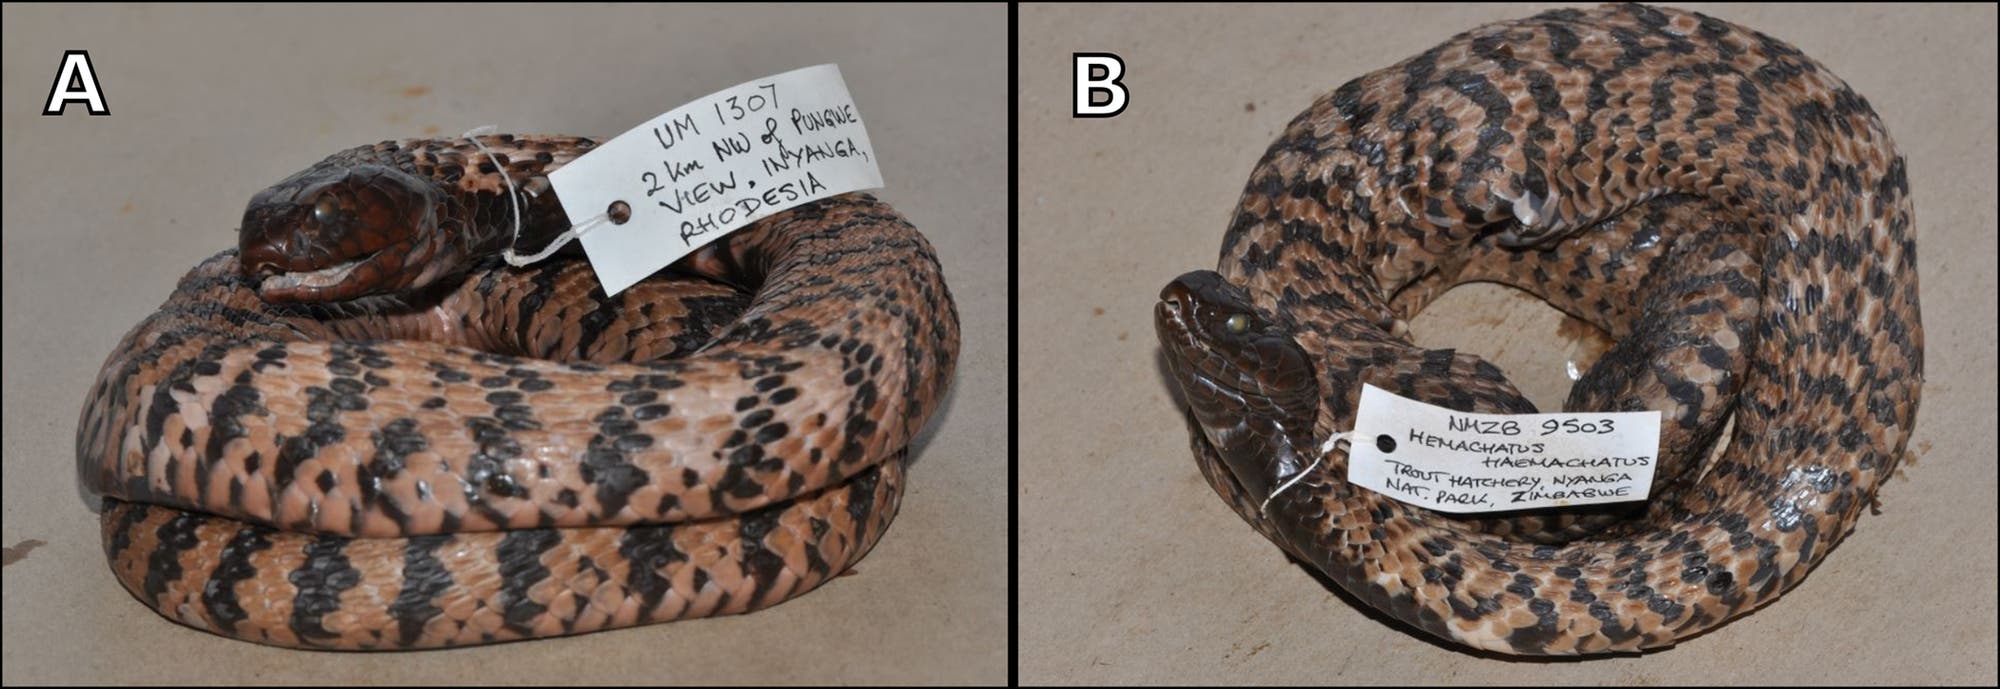 Die Schlangenart Hemachatus nyangensis kennt man nur von diesem toten Exemplar im Museum. Sie ist aufgerollt und mit einem Schild versehen. Sie besitzt ein Muster aus rostbraunen und dunklen Schuppen